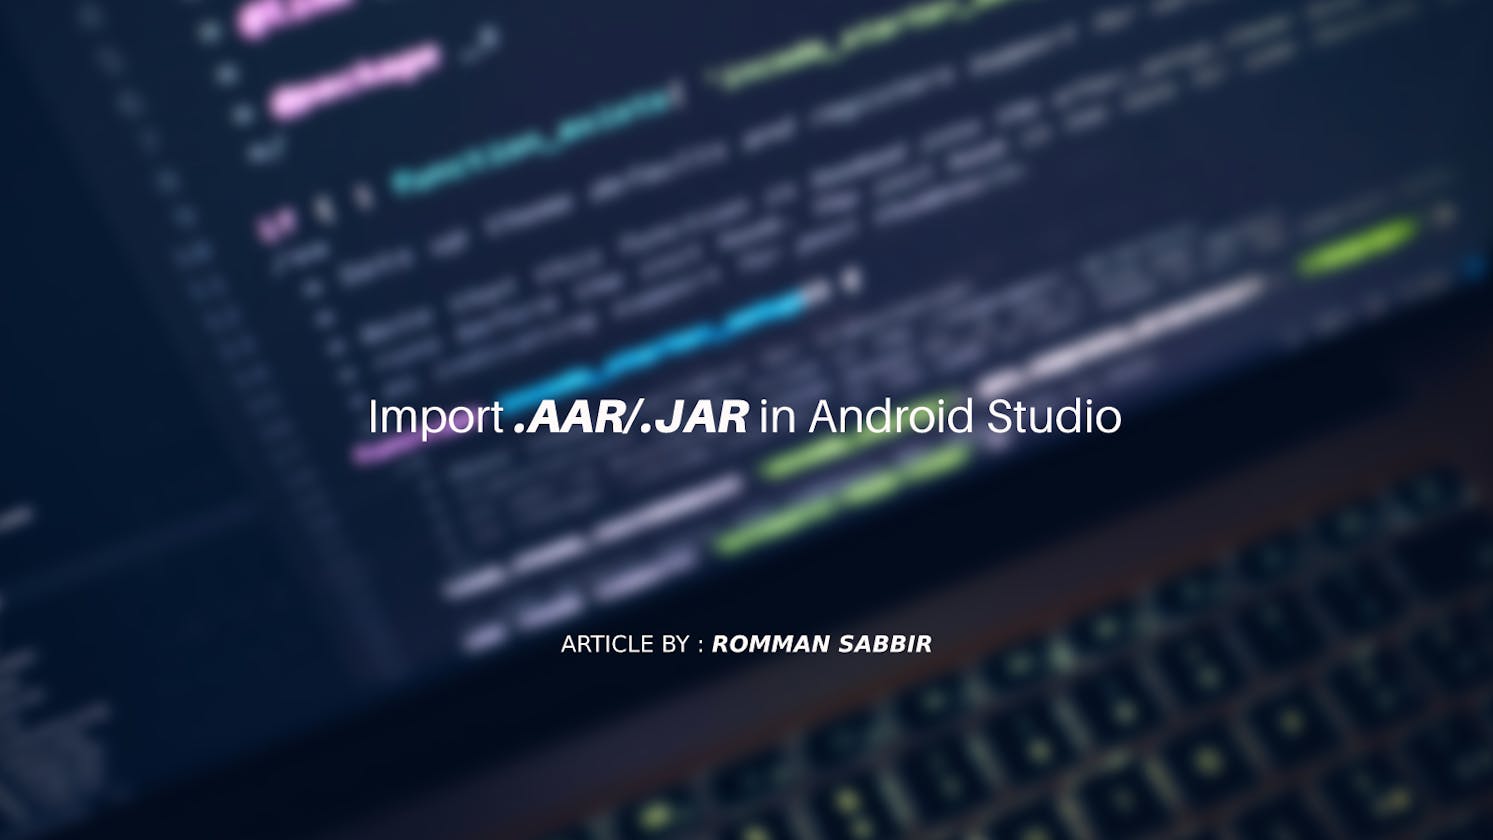 Import .AAR/.JAR in Android Studio